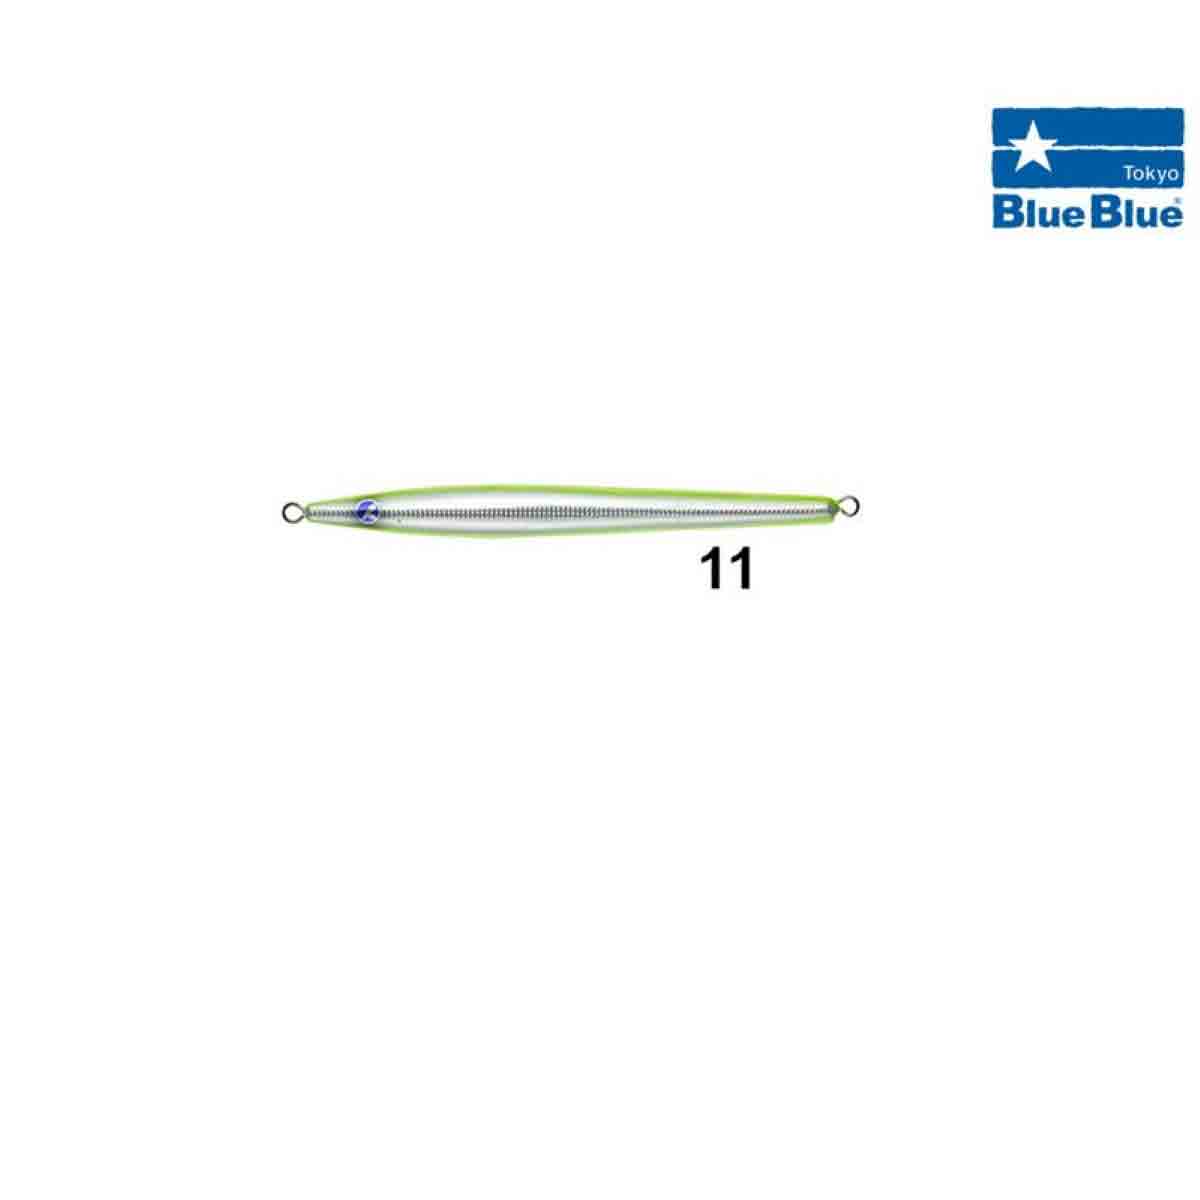 BlueBlue Conifer Jig Yem 190 Gram,blueblue kalitesinde vertical jigging avlarınızda kullanabileceğiniz ve kıyıdan shore jig avlarınız da kullanabileceğiniz blueblue kalitesinde jig yem serisi